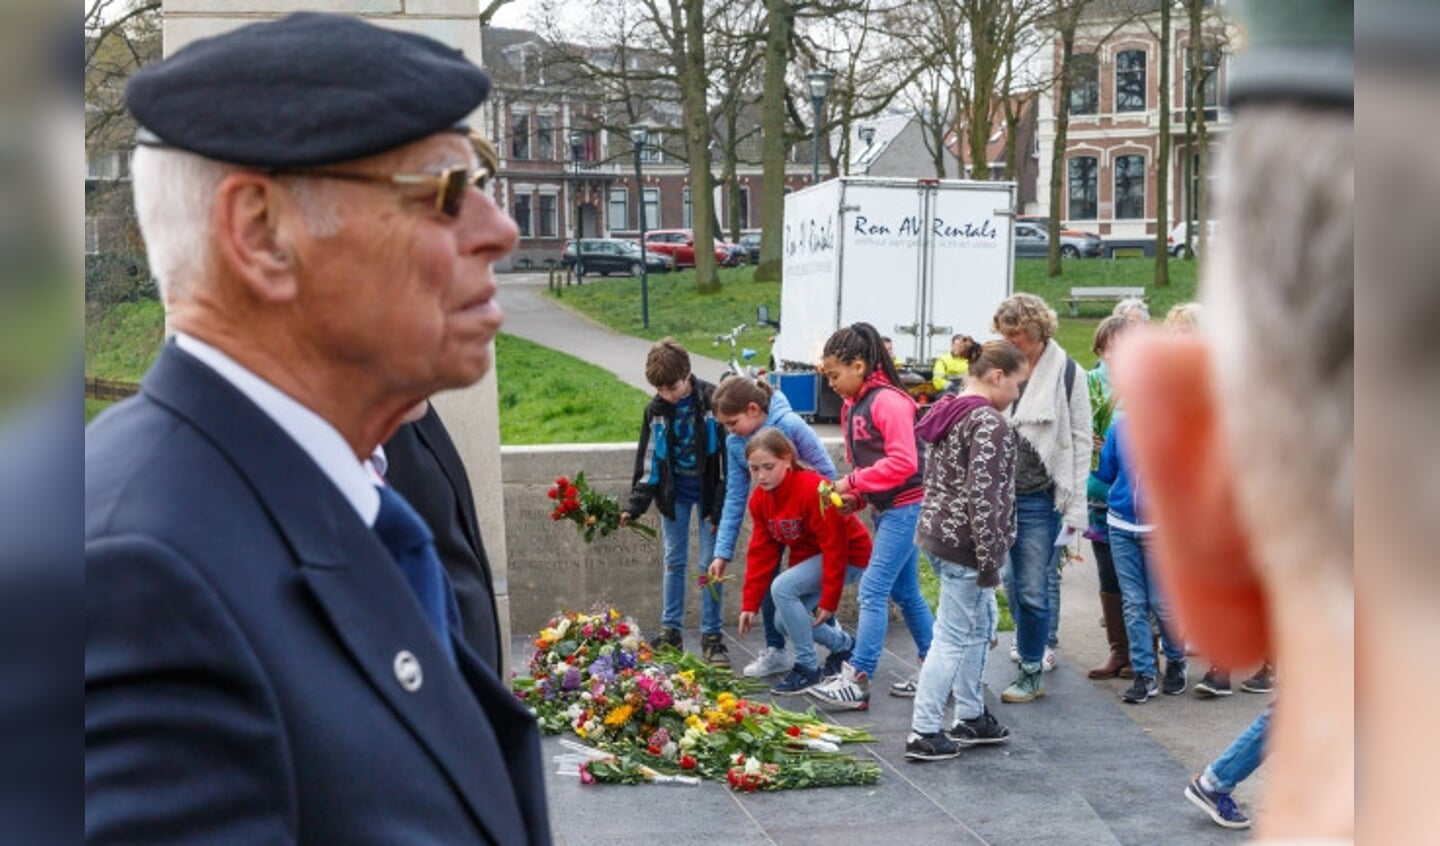  Herdenking bevrijding Zwolle in het Pelkwijkpark bij het monument.